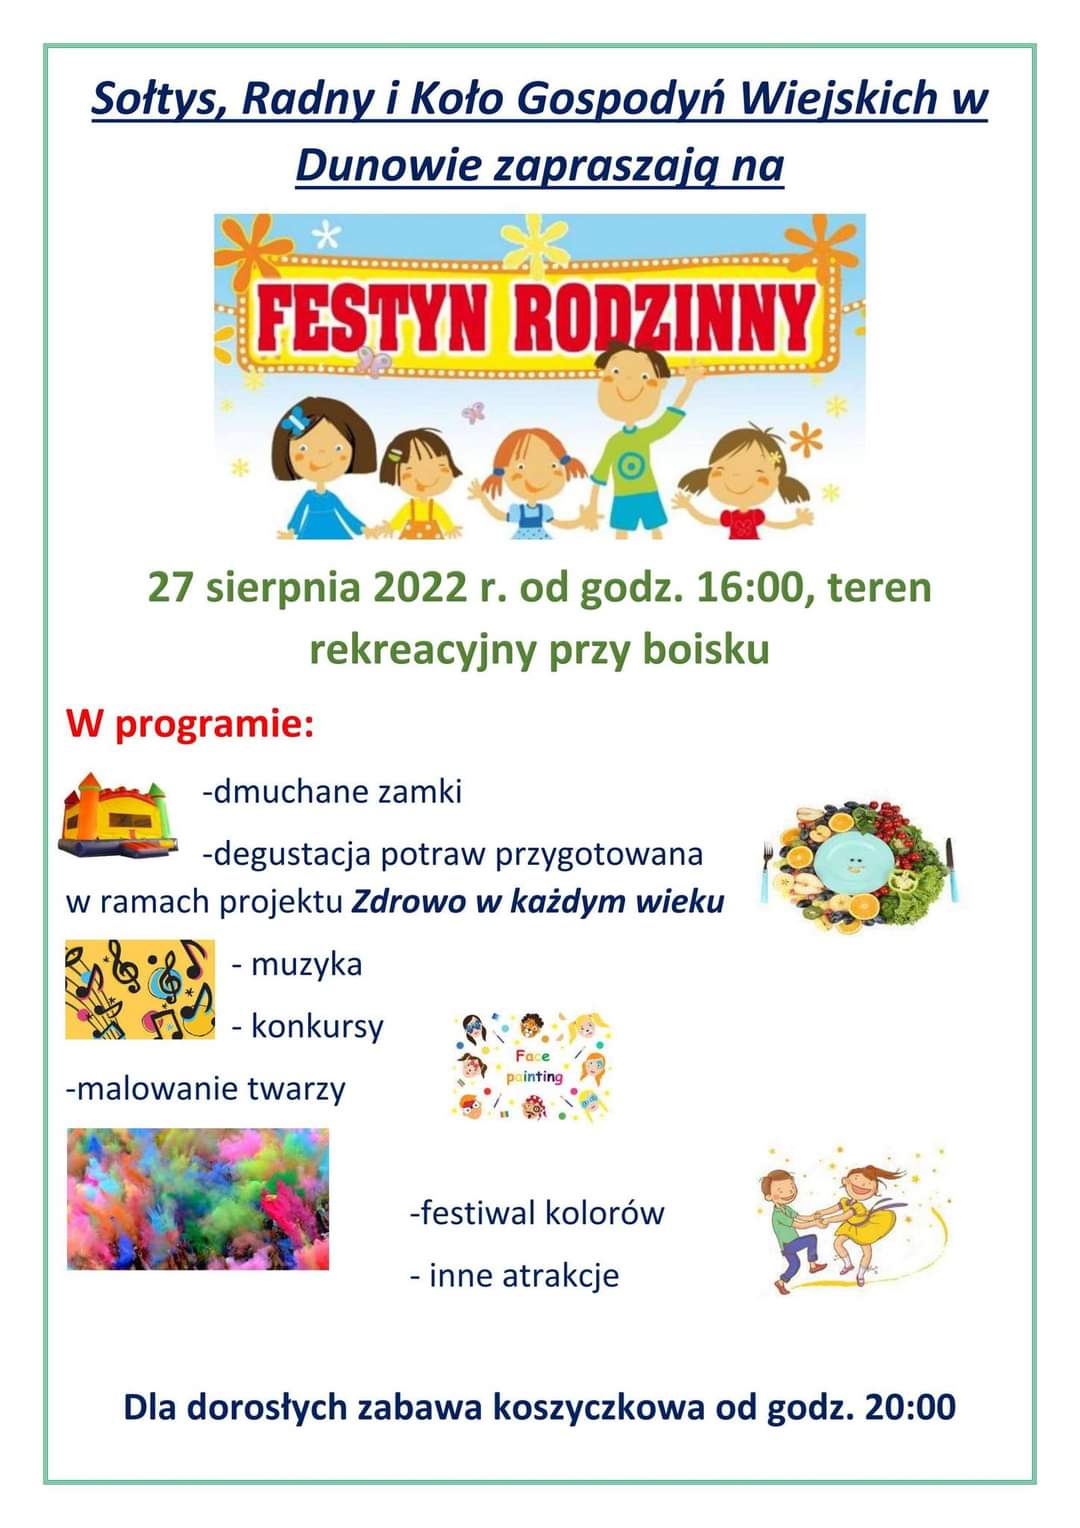 Plakat zapraszający na festyn rodzinny w Dunowie 27 sierpnia 2022